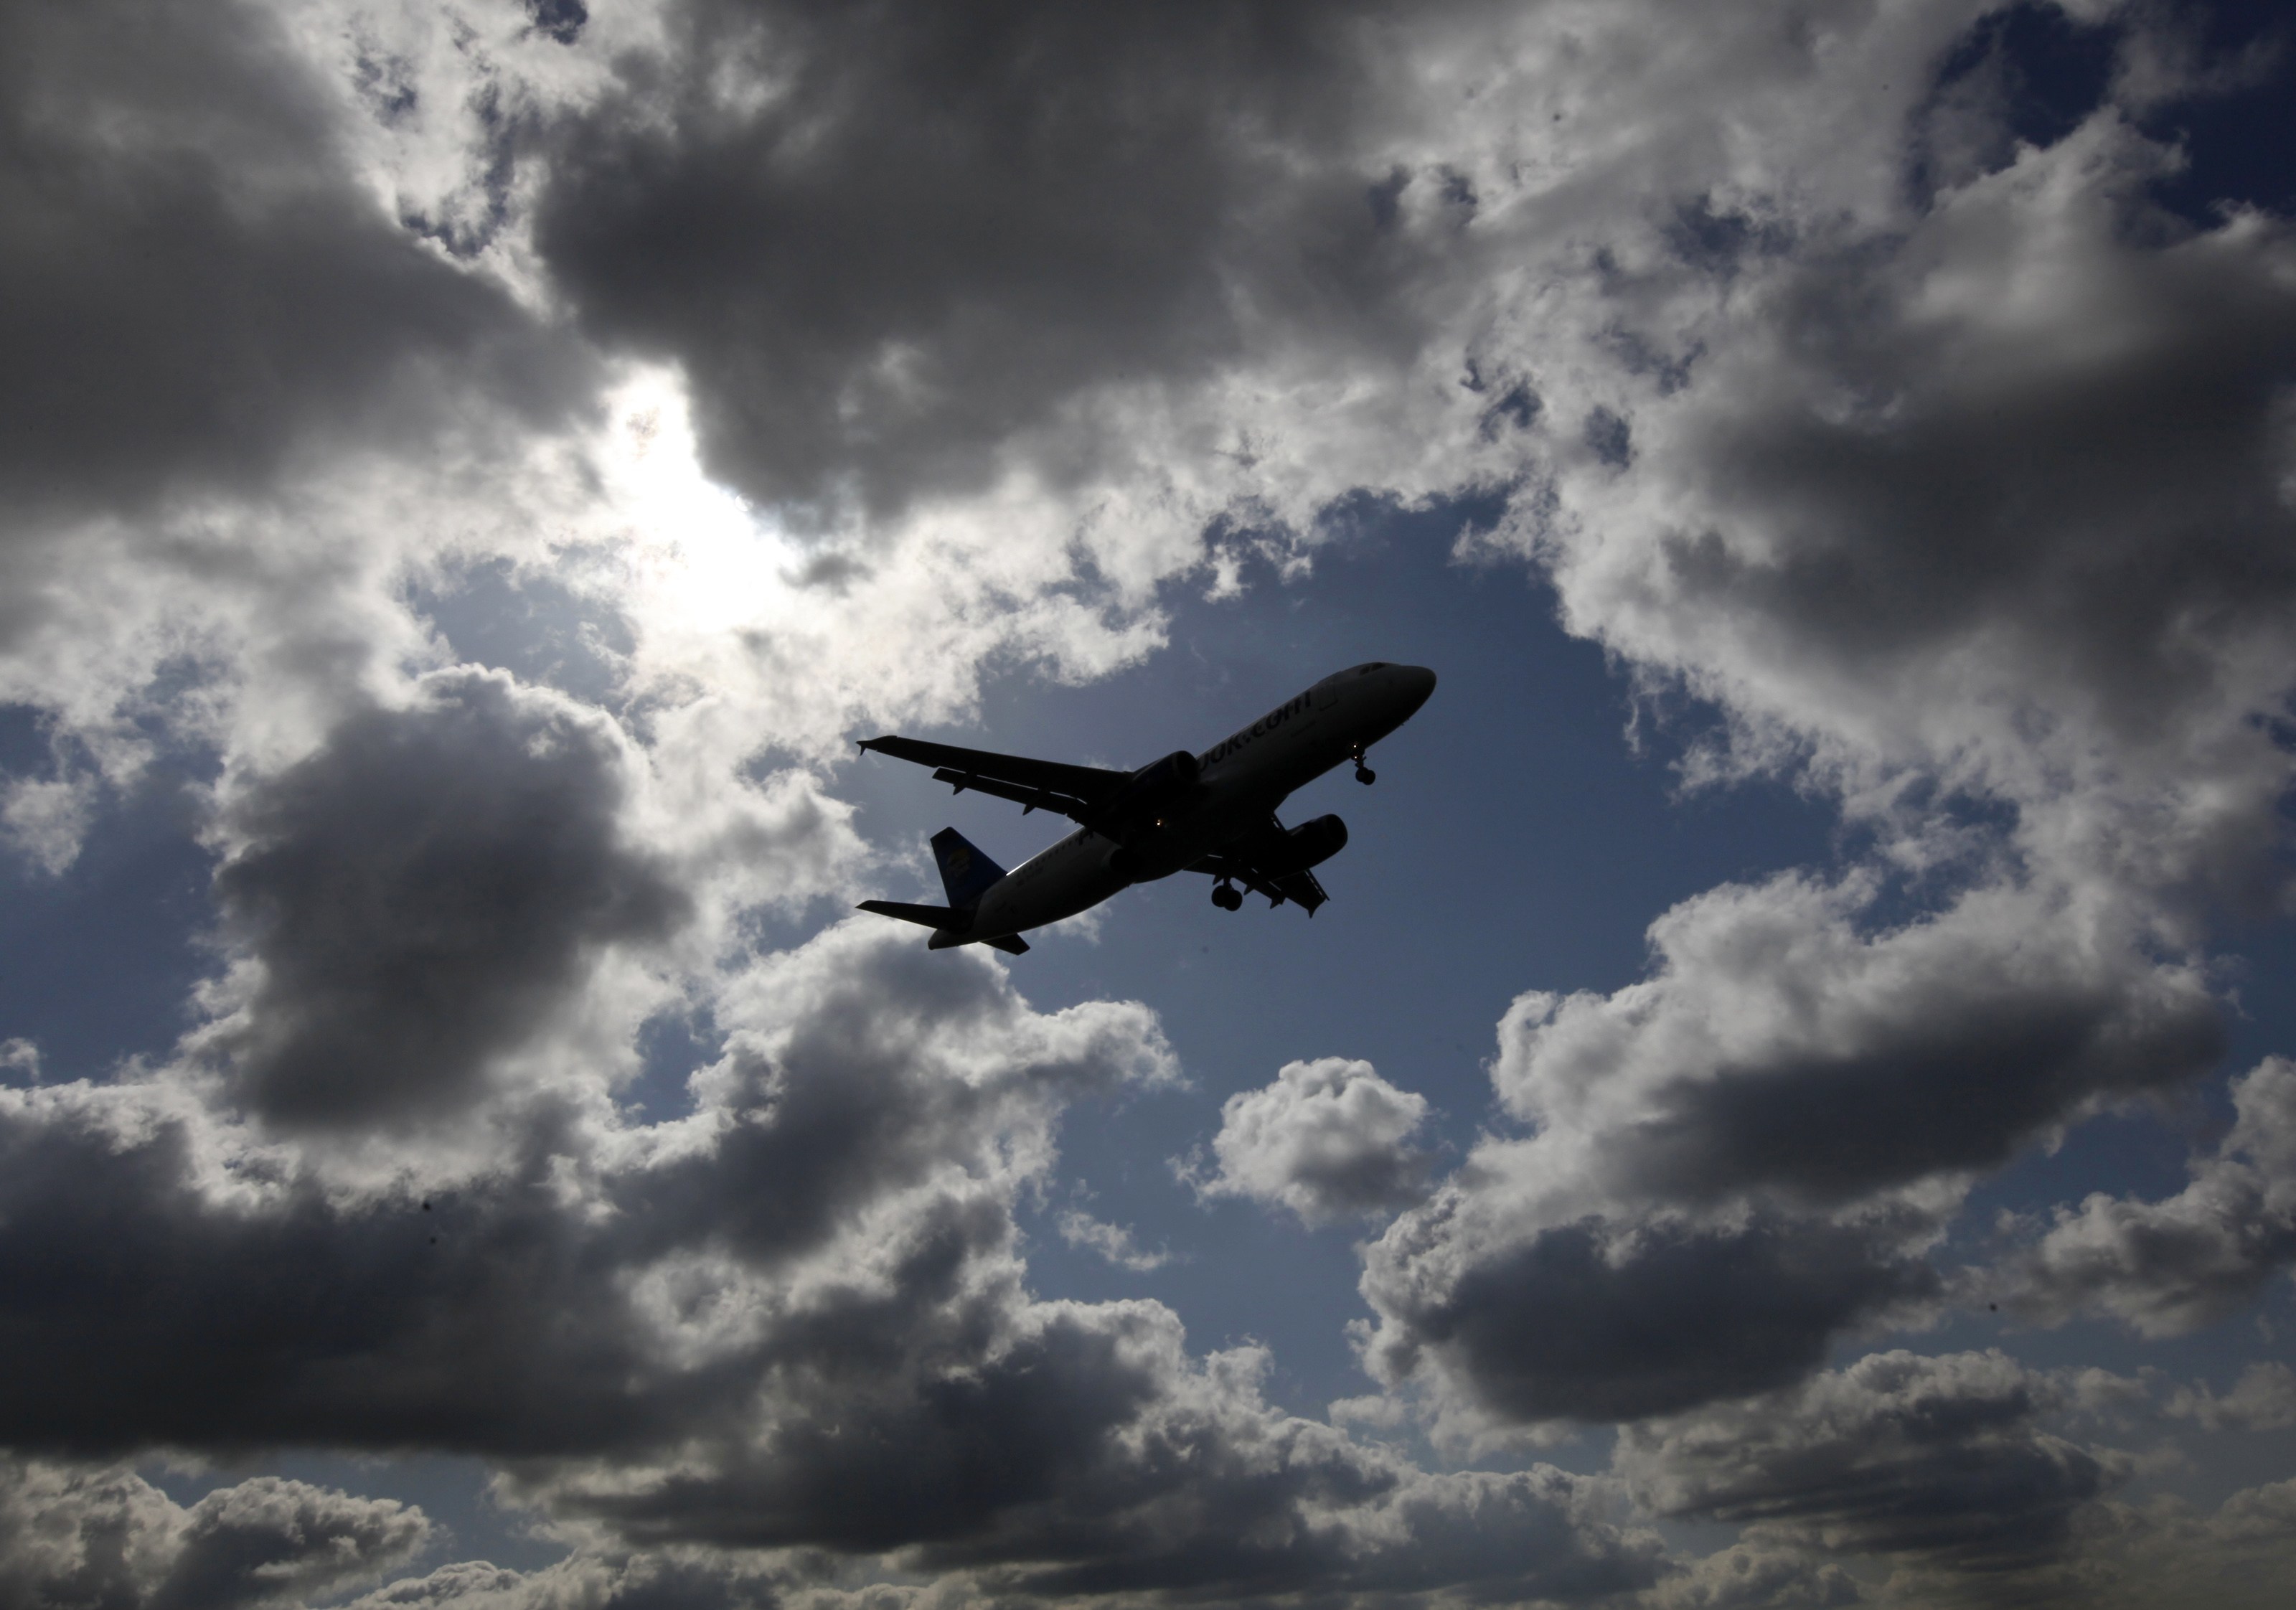 Συμβαίνουν κι αυτά στ’ αεροπλάνα εκτός από όργια: Έσωσαν βρέφος εν πτήσει! (VIDEO)